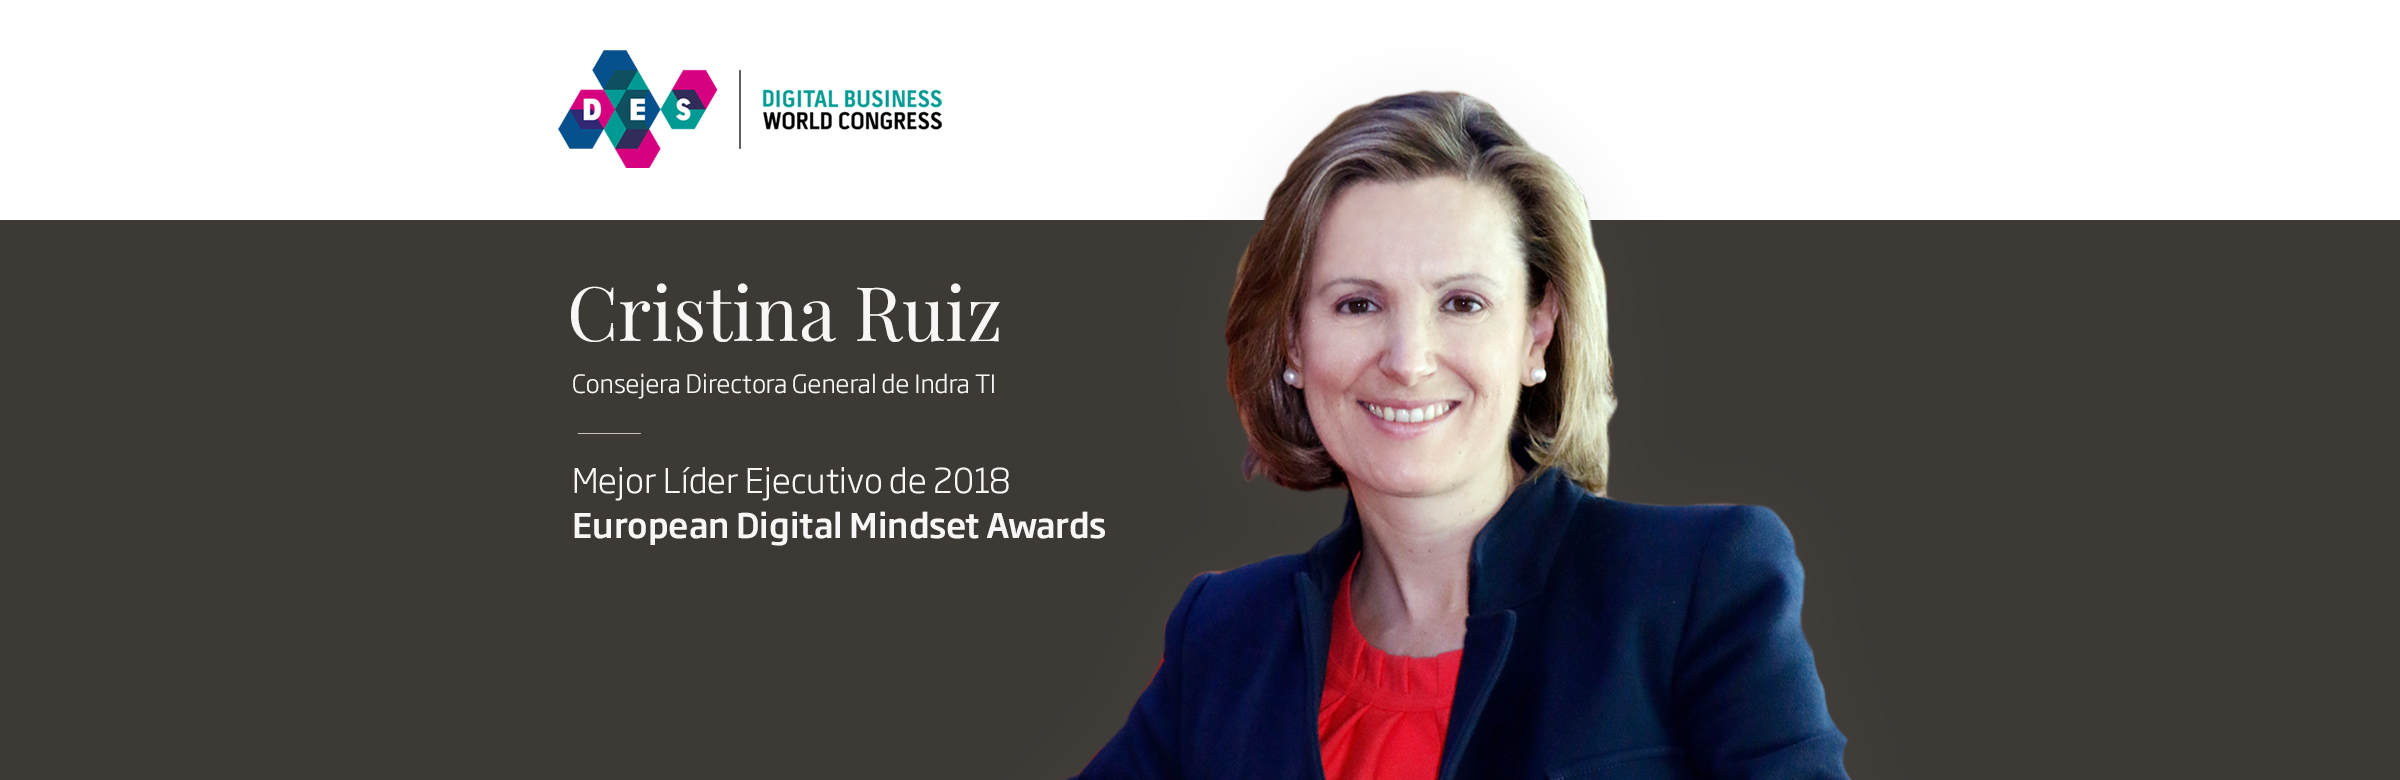 Cristina Ruiz, eleita a melhor líder executiva de 2018 pelo impulsionamento da Transformação Digital na Indra TI e na Minsait